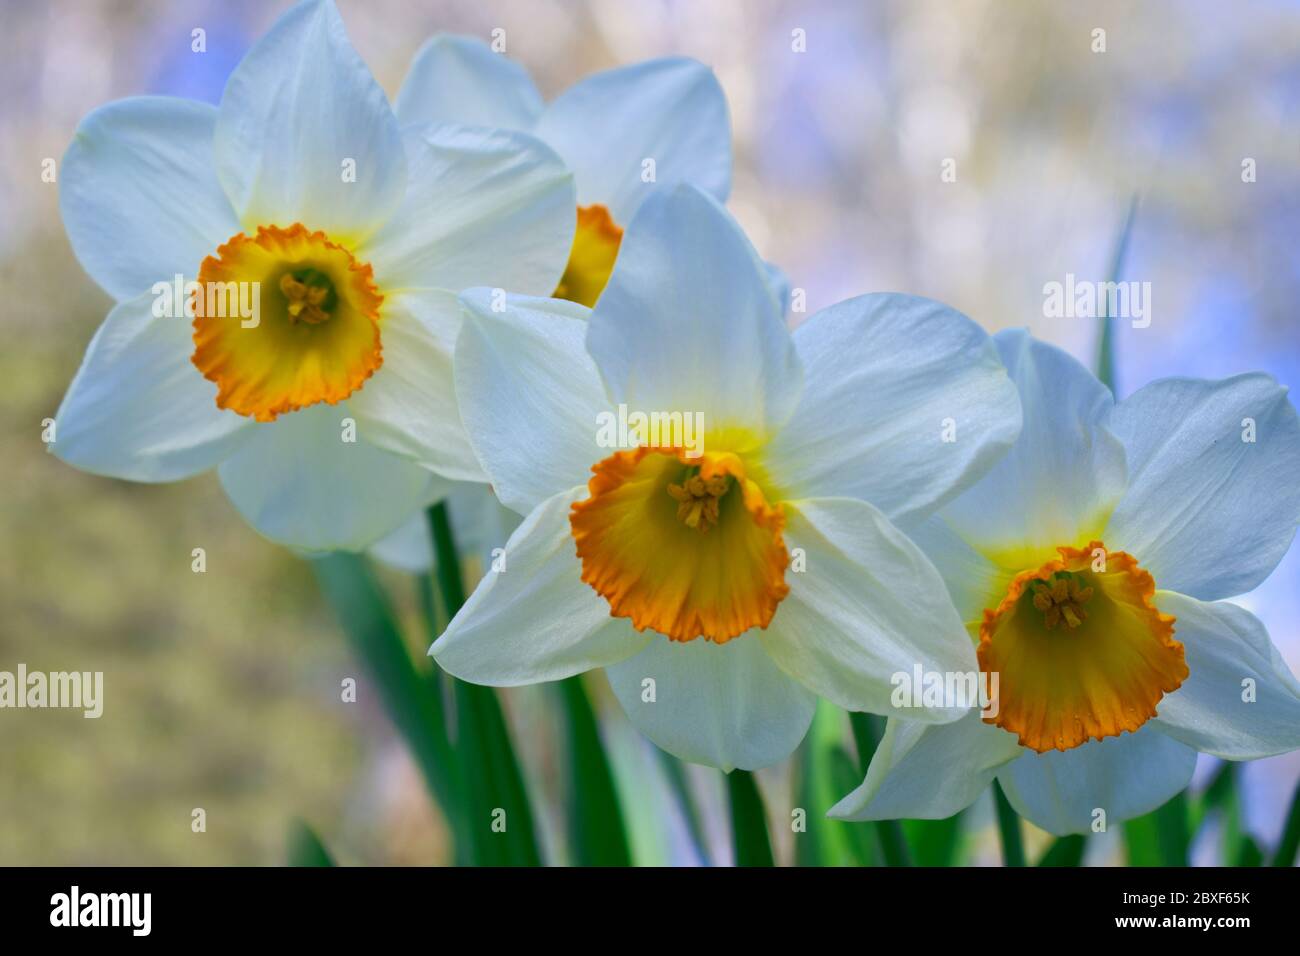 Arioso e delicato narciso bianco narciso gruppo di fiori daffodil primo piano fioritura nel giardino primaverile, colori pastello sfocati sfondo fresco Foto Stock